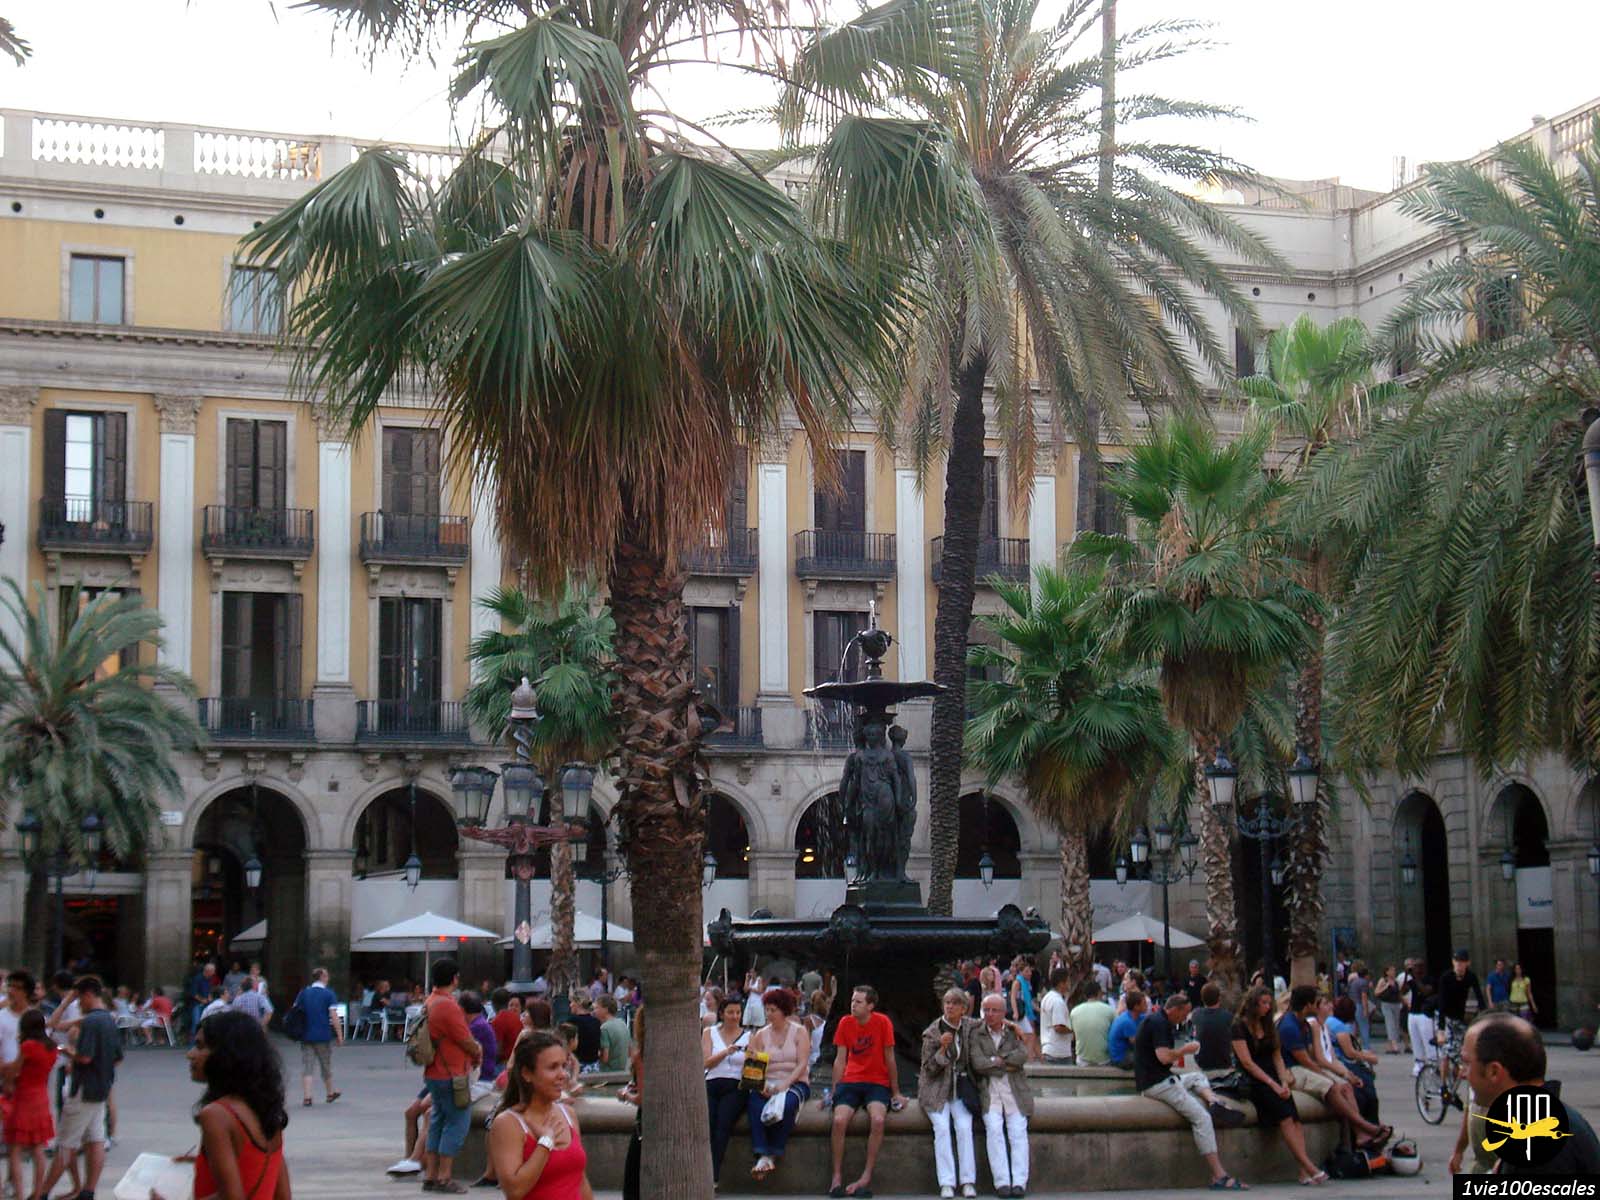 La Plaça Reial de Barcelone avec sa fontaine, ses arcades et ses palmiers